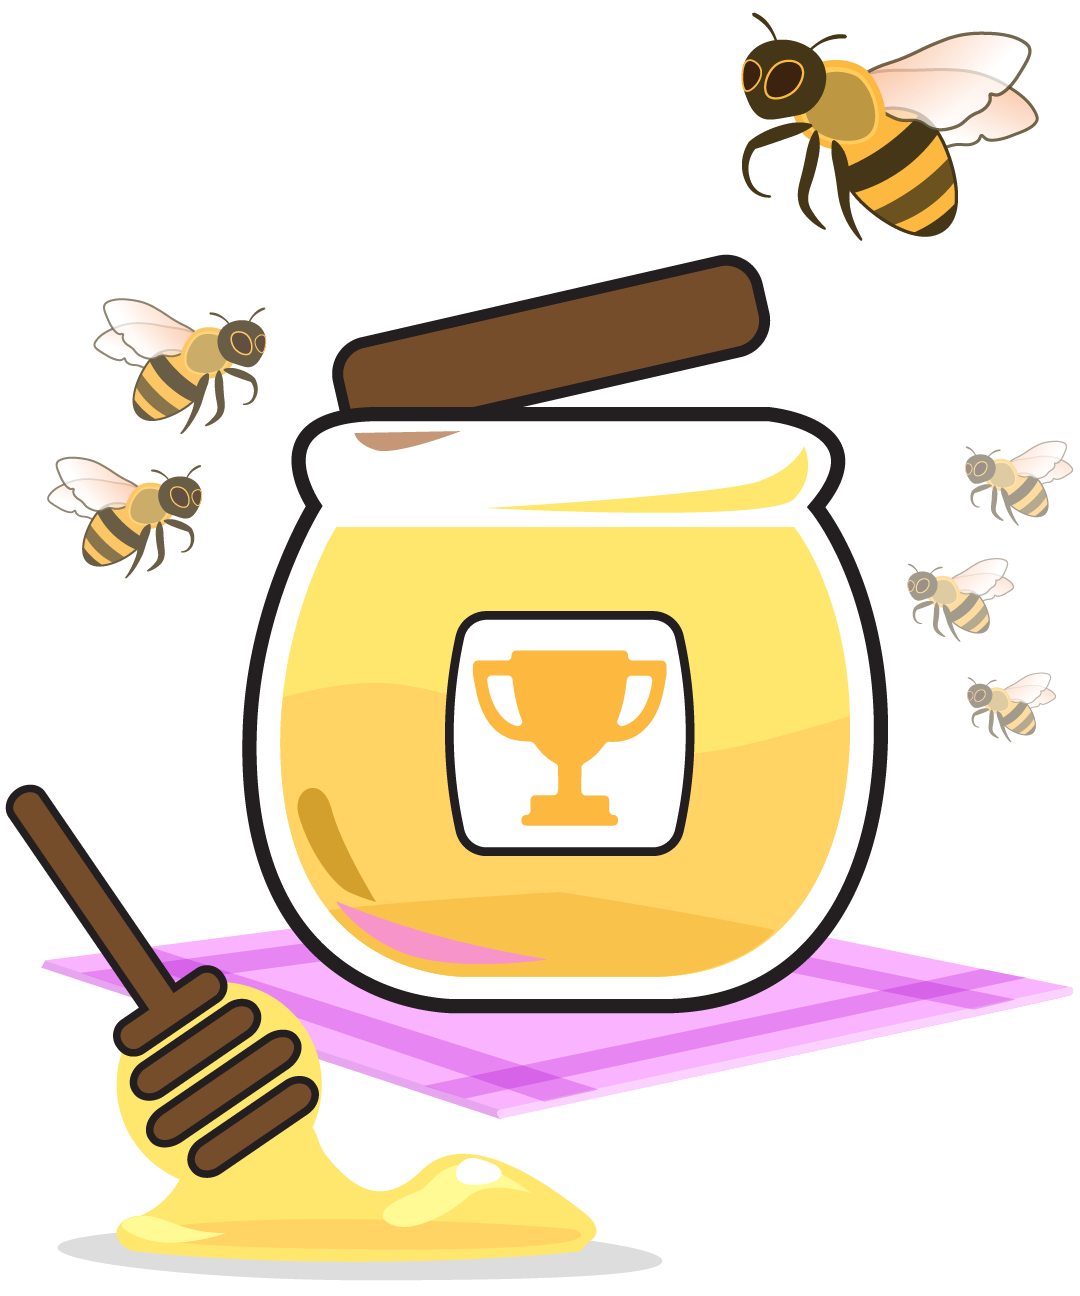 bees and honey jar